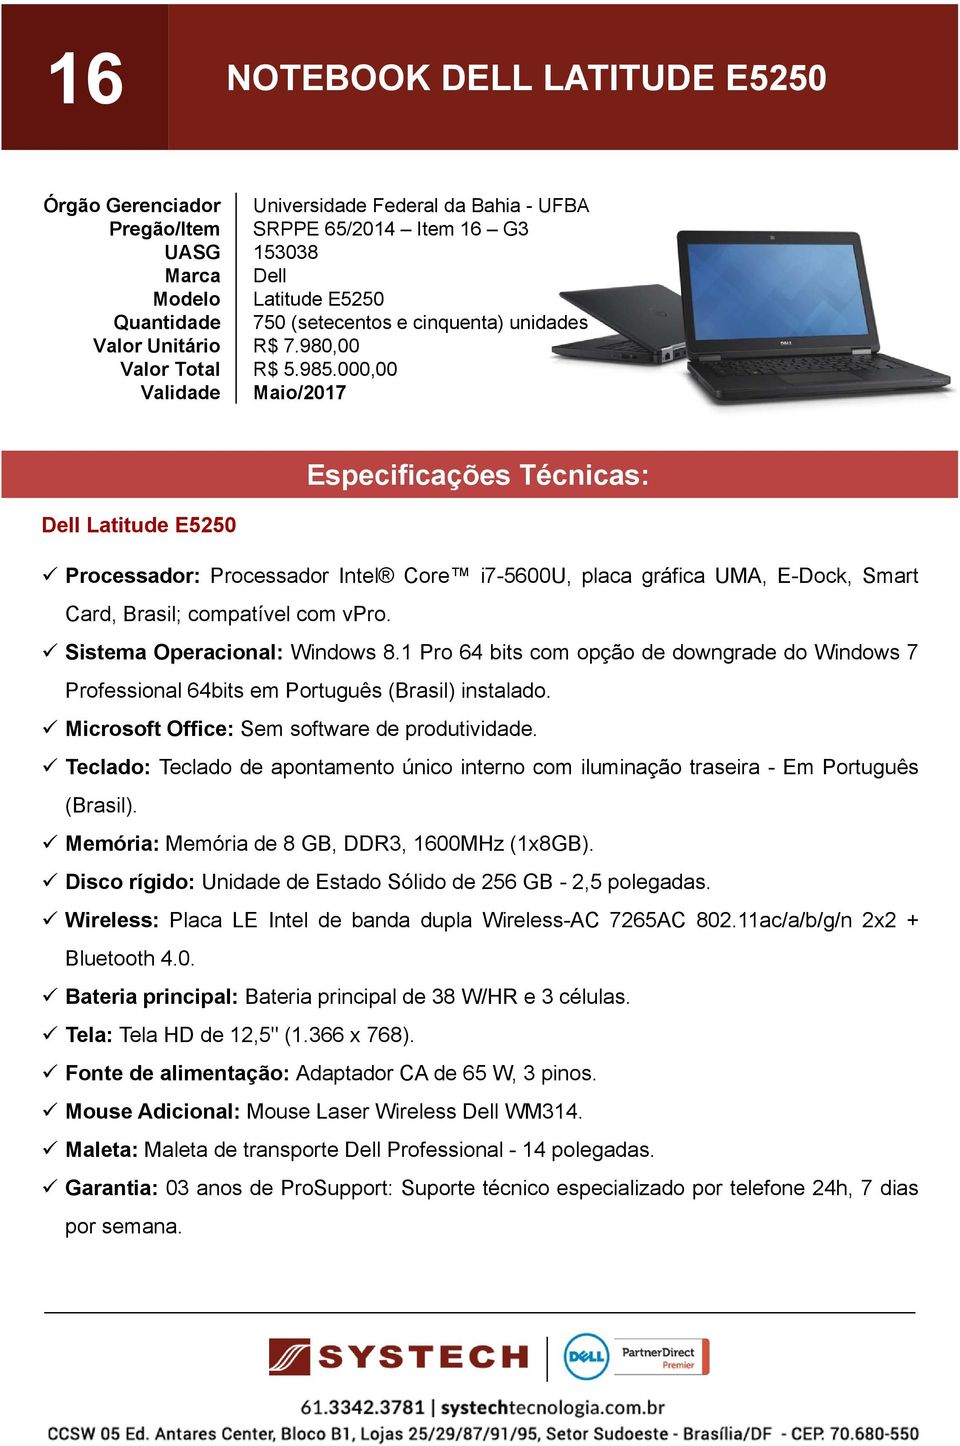 1 Pro 64 bits com opção de downgrade do Windows 7 Teclado: Teclado de apontamento único interno com iluminação traseira - Em Português (Brasil). Memória: Memória de 8 GB, DDR3, 1600MHz (1x8GB).